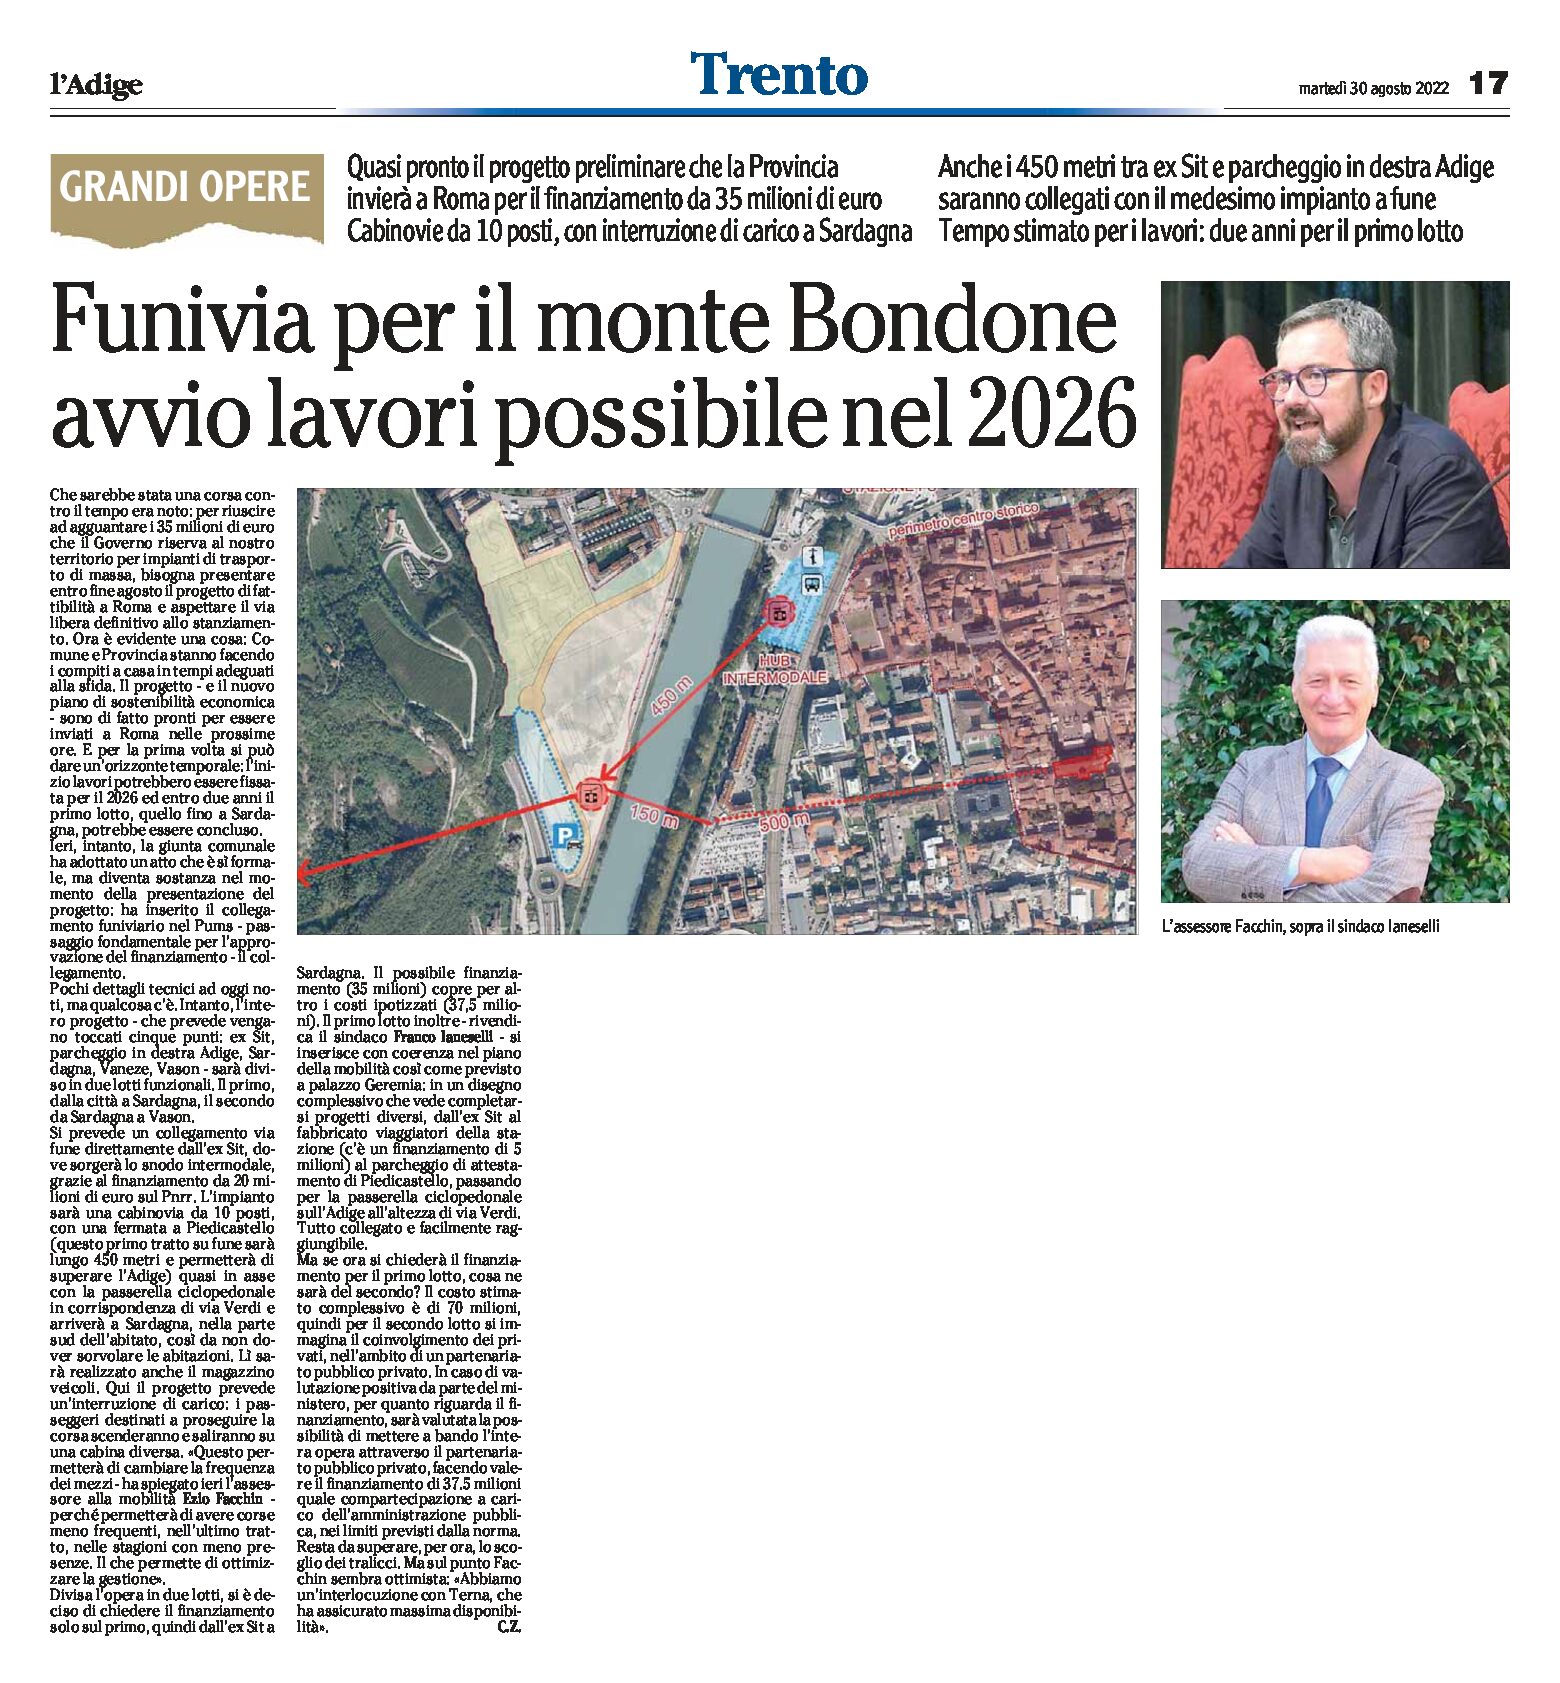 Funivia Trento-Bondone: avvio lavori possibile nel 2026